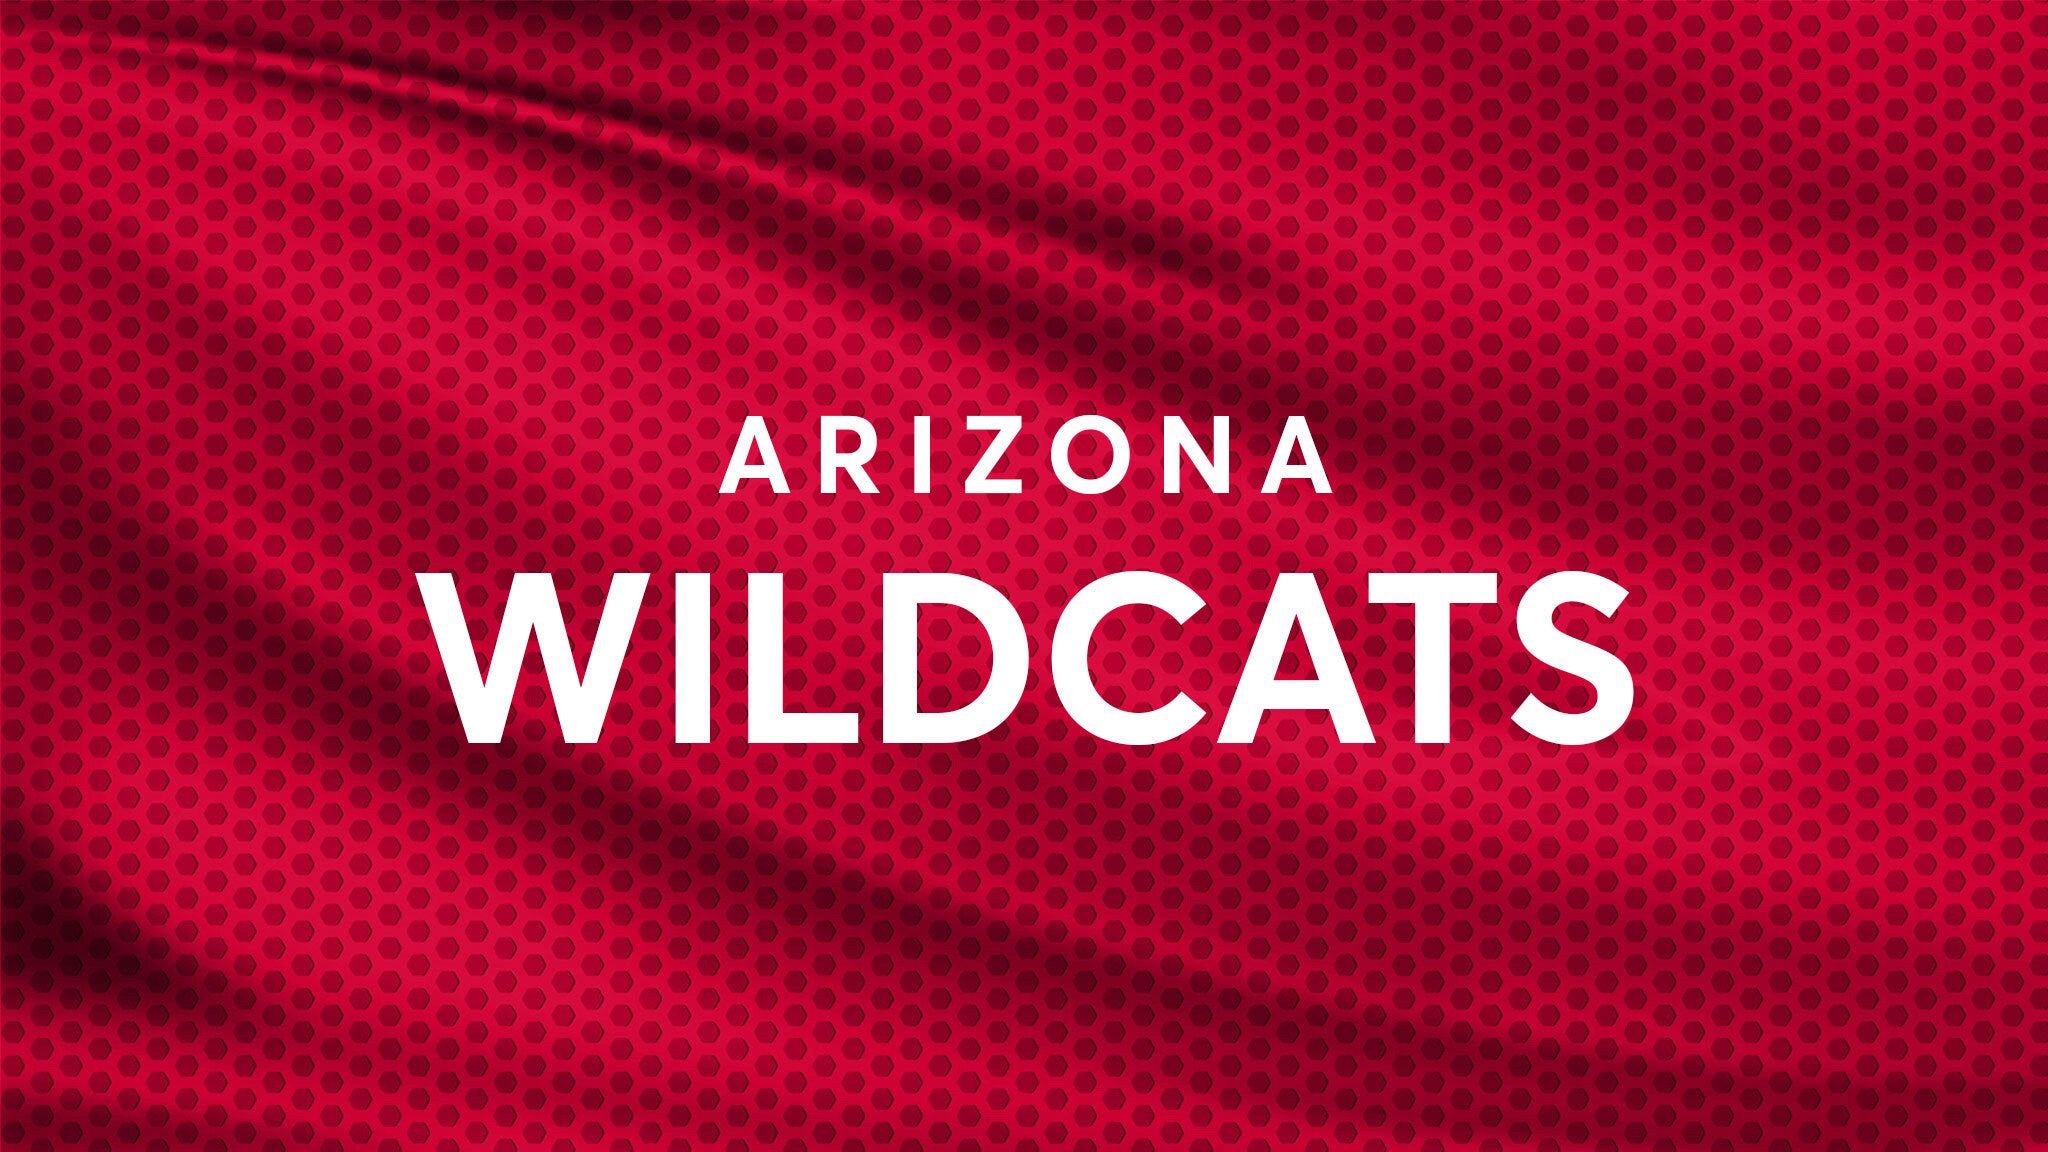 Arizona Wildcats Football hero